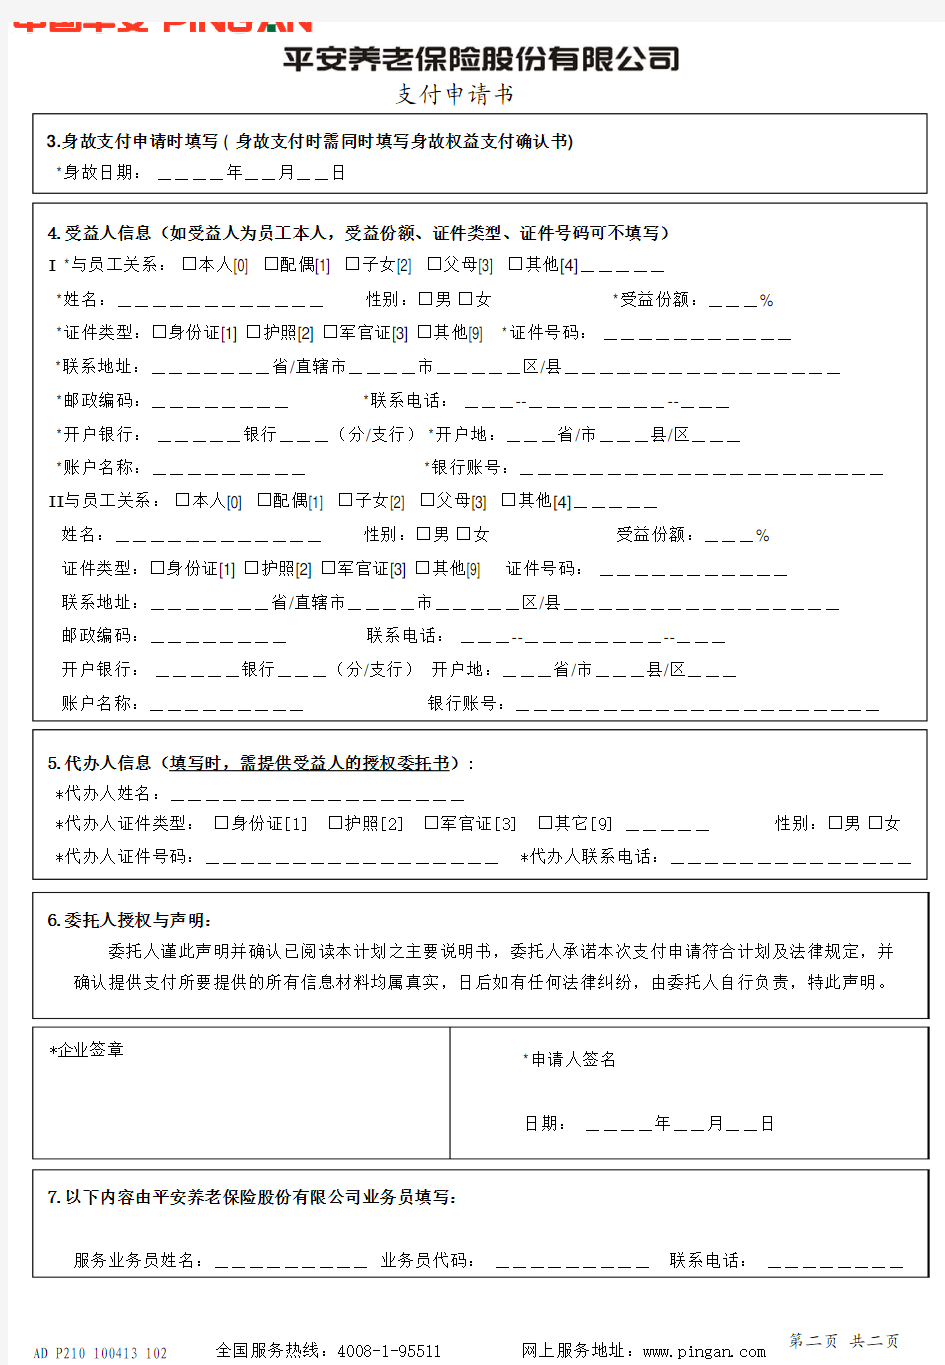 平安账管-支付申请表-中国平安养老保险股份有限公司